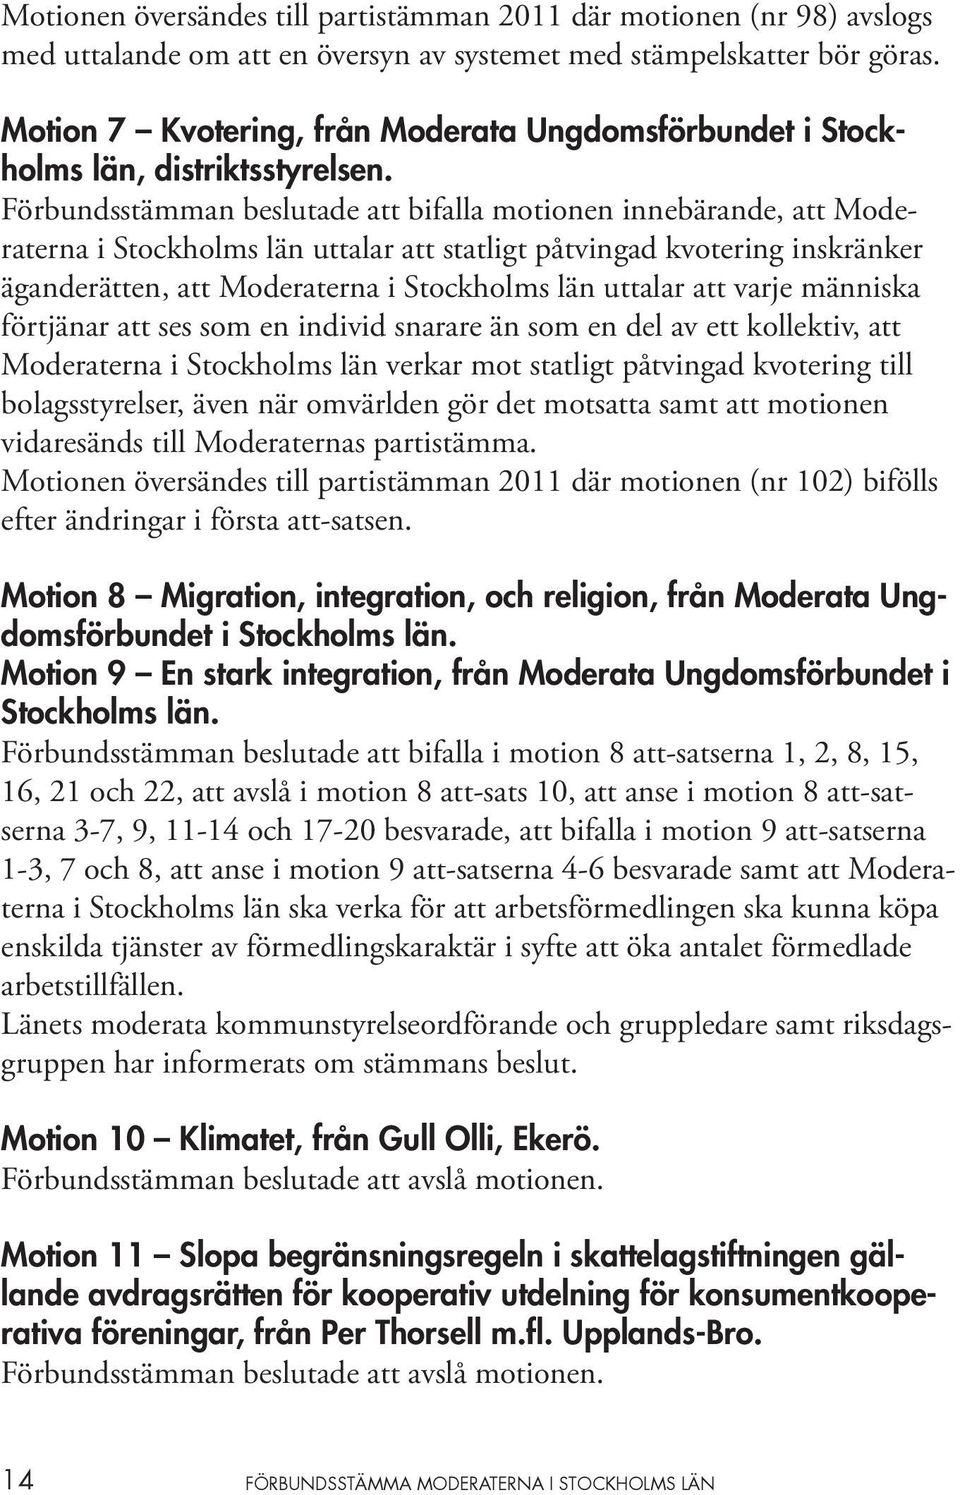 Förbundsstämman beslutade att bifalla motionen innebärande, att Moderaterna i Stockholms län uttalar att statligt påtvingad kvotering inskränker äganderätten, att Moderaterna i Stockholms län uttalar